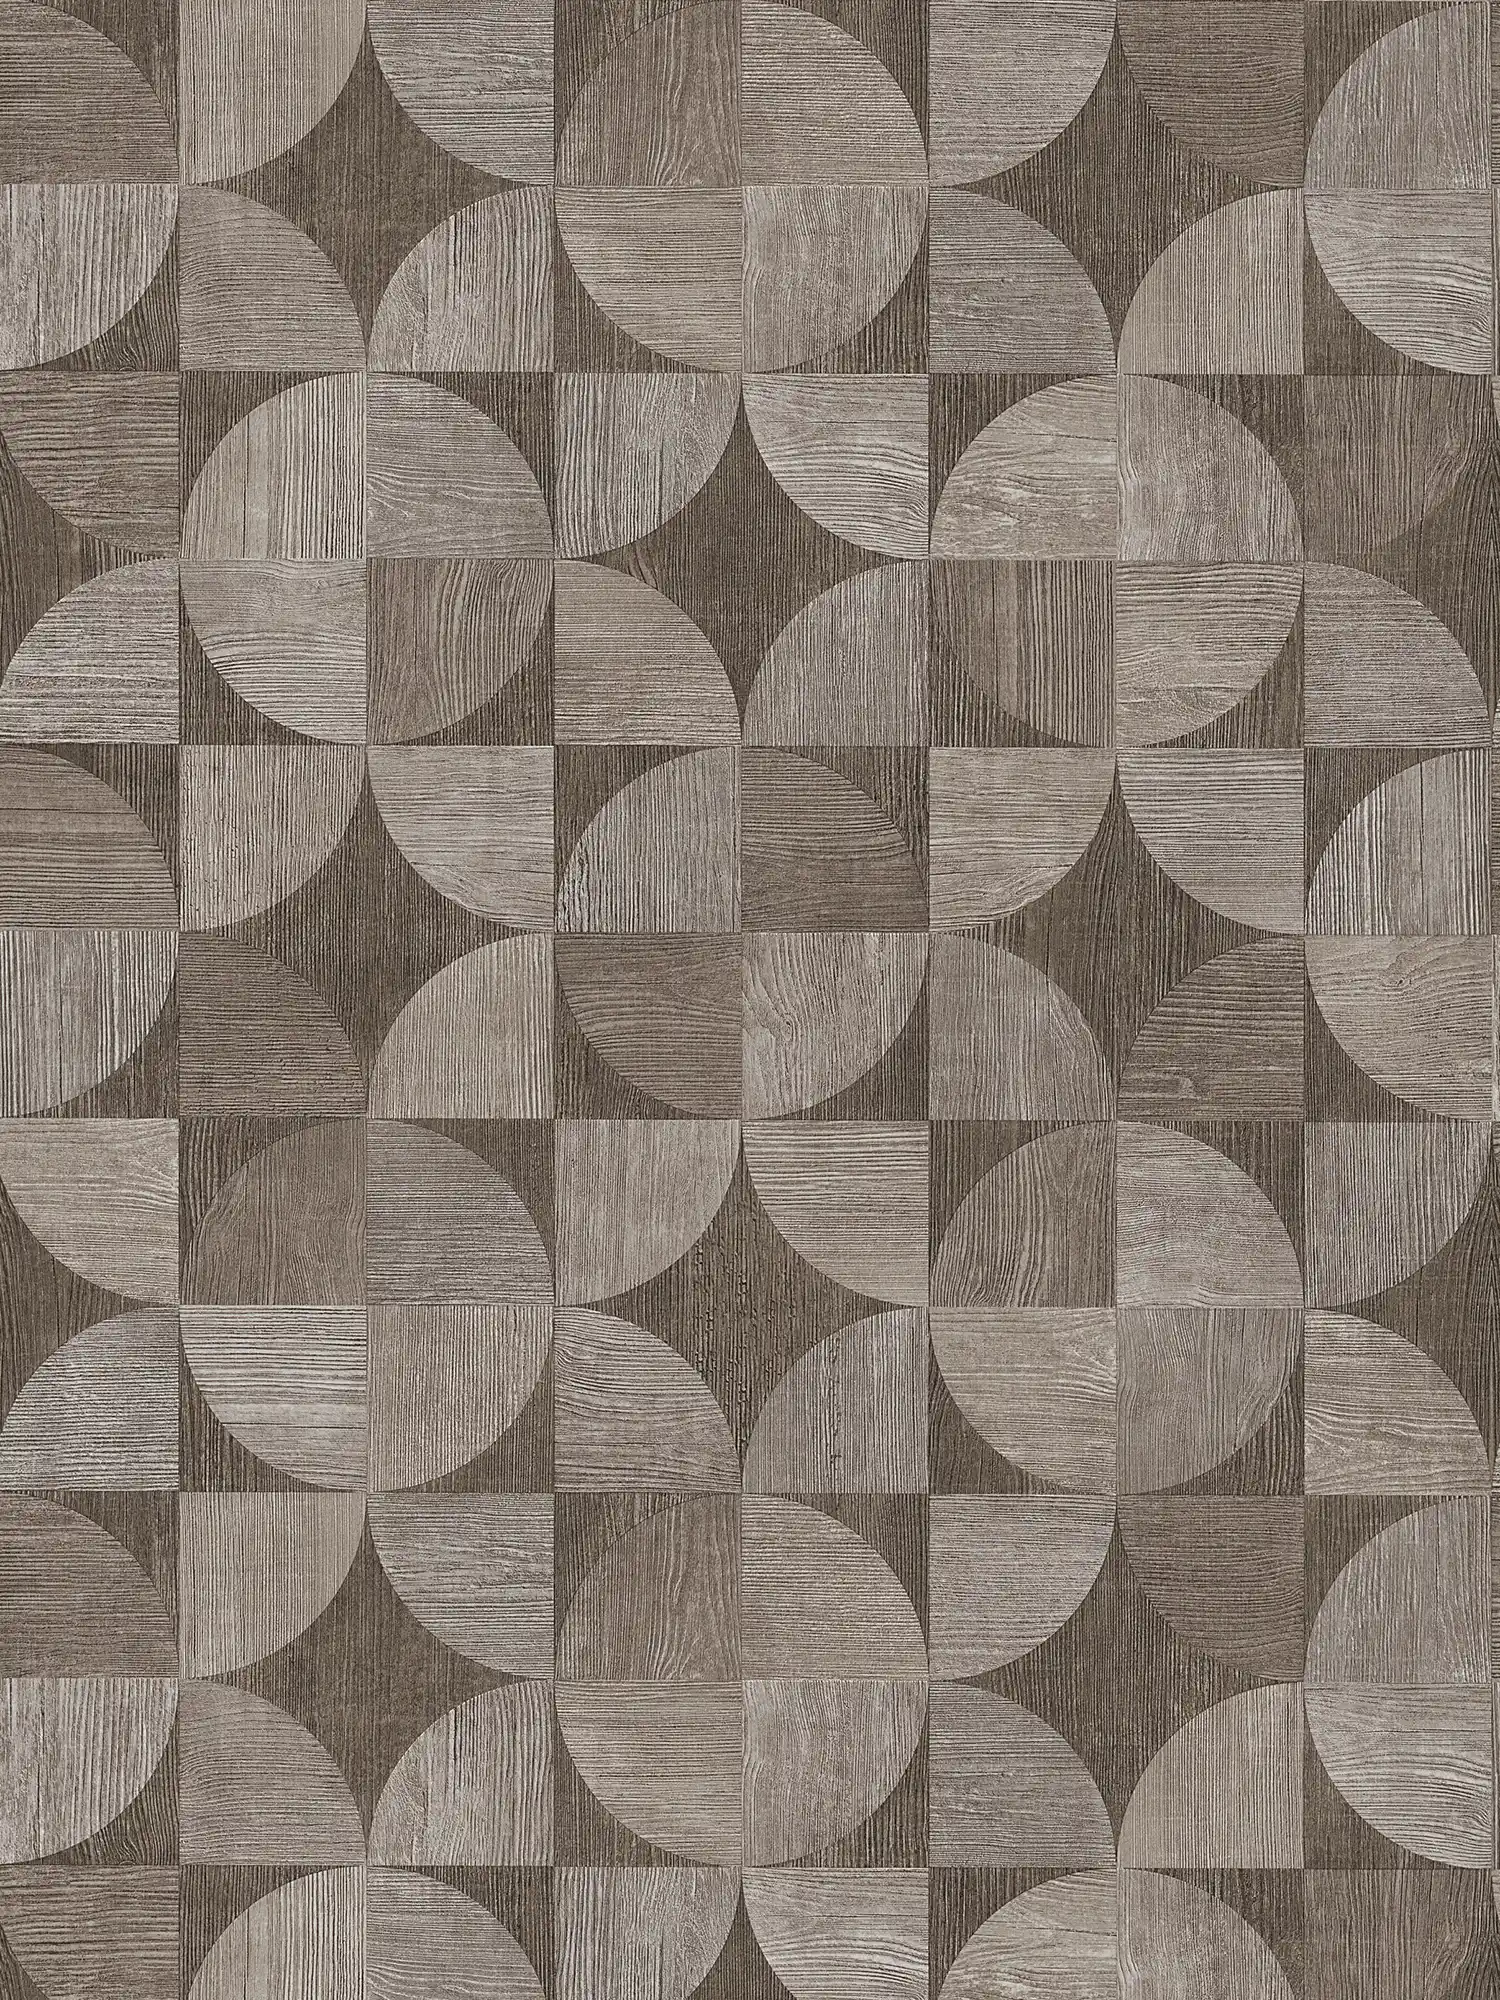 Hout-look grafisch patroon behang - grijs, bruin
